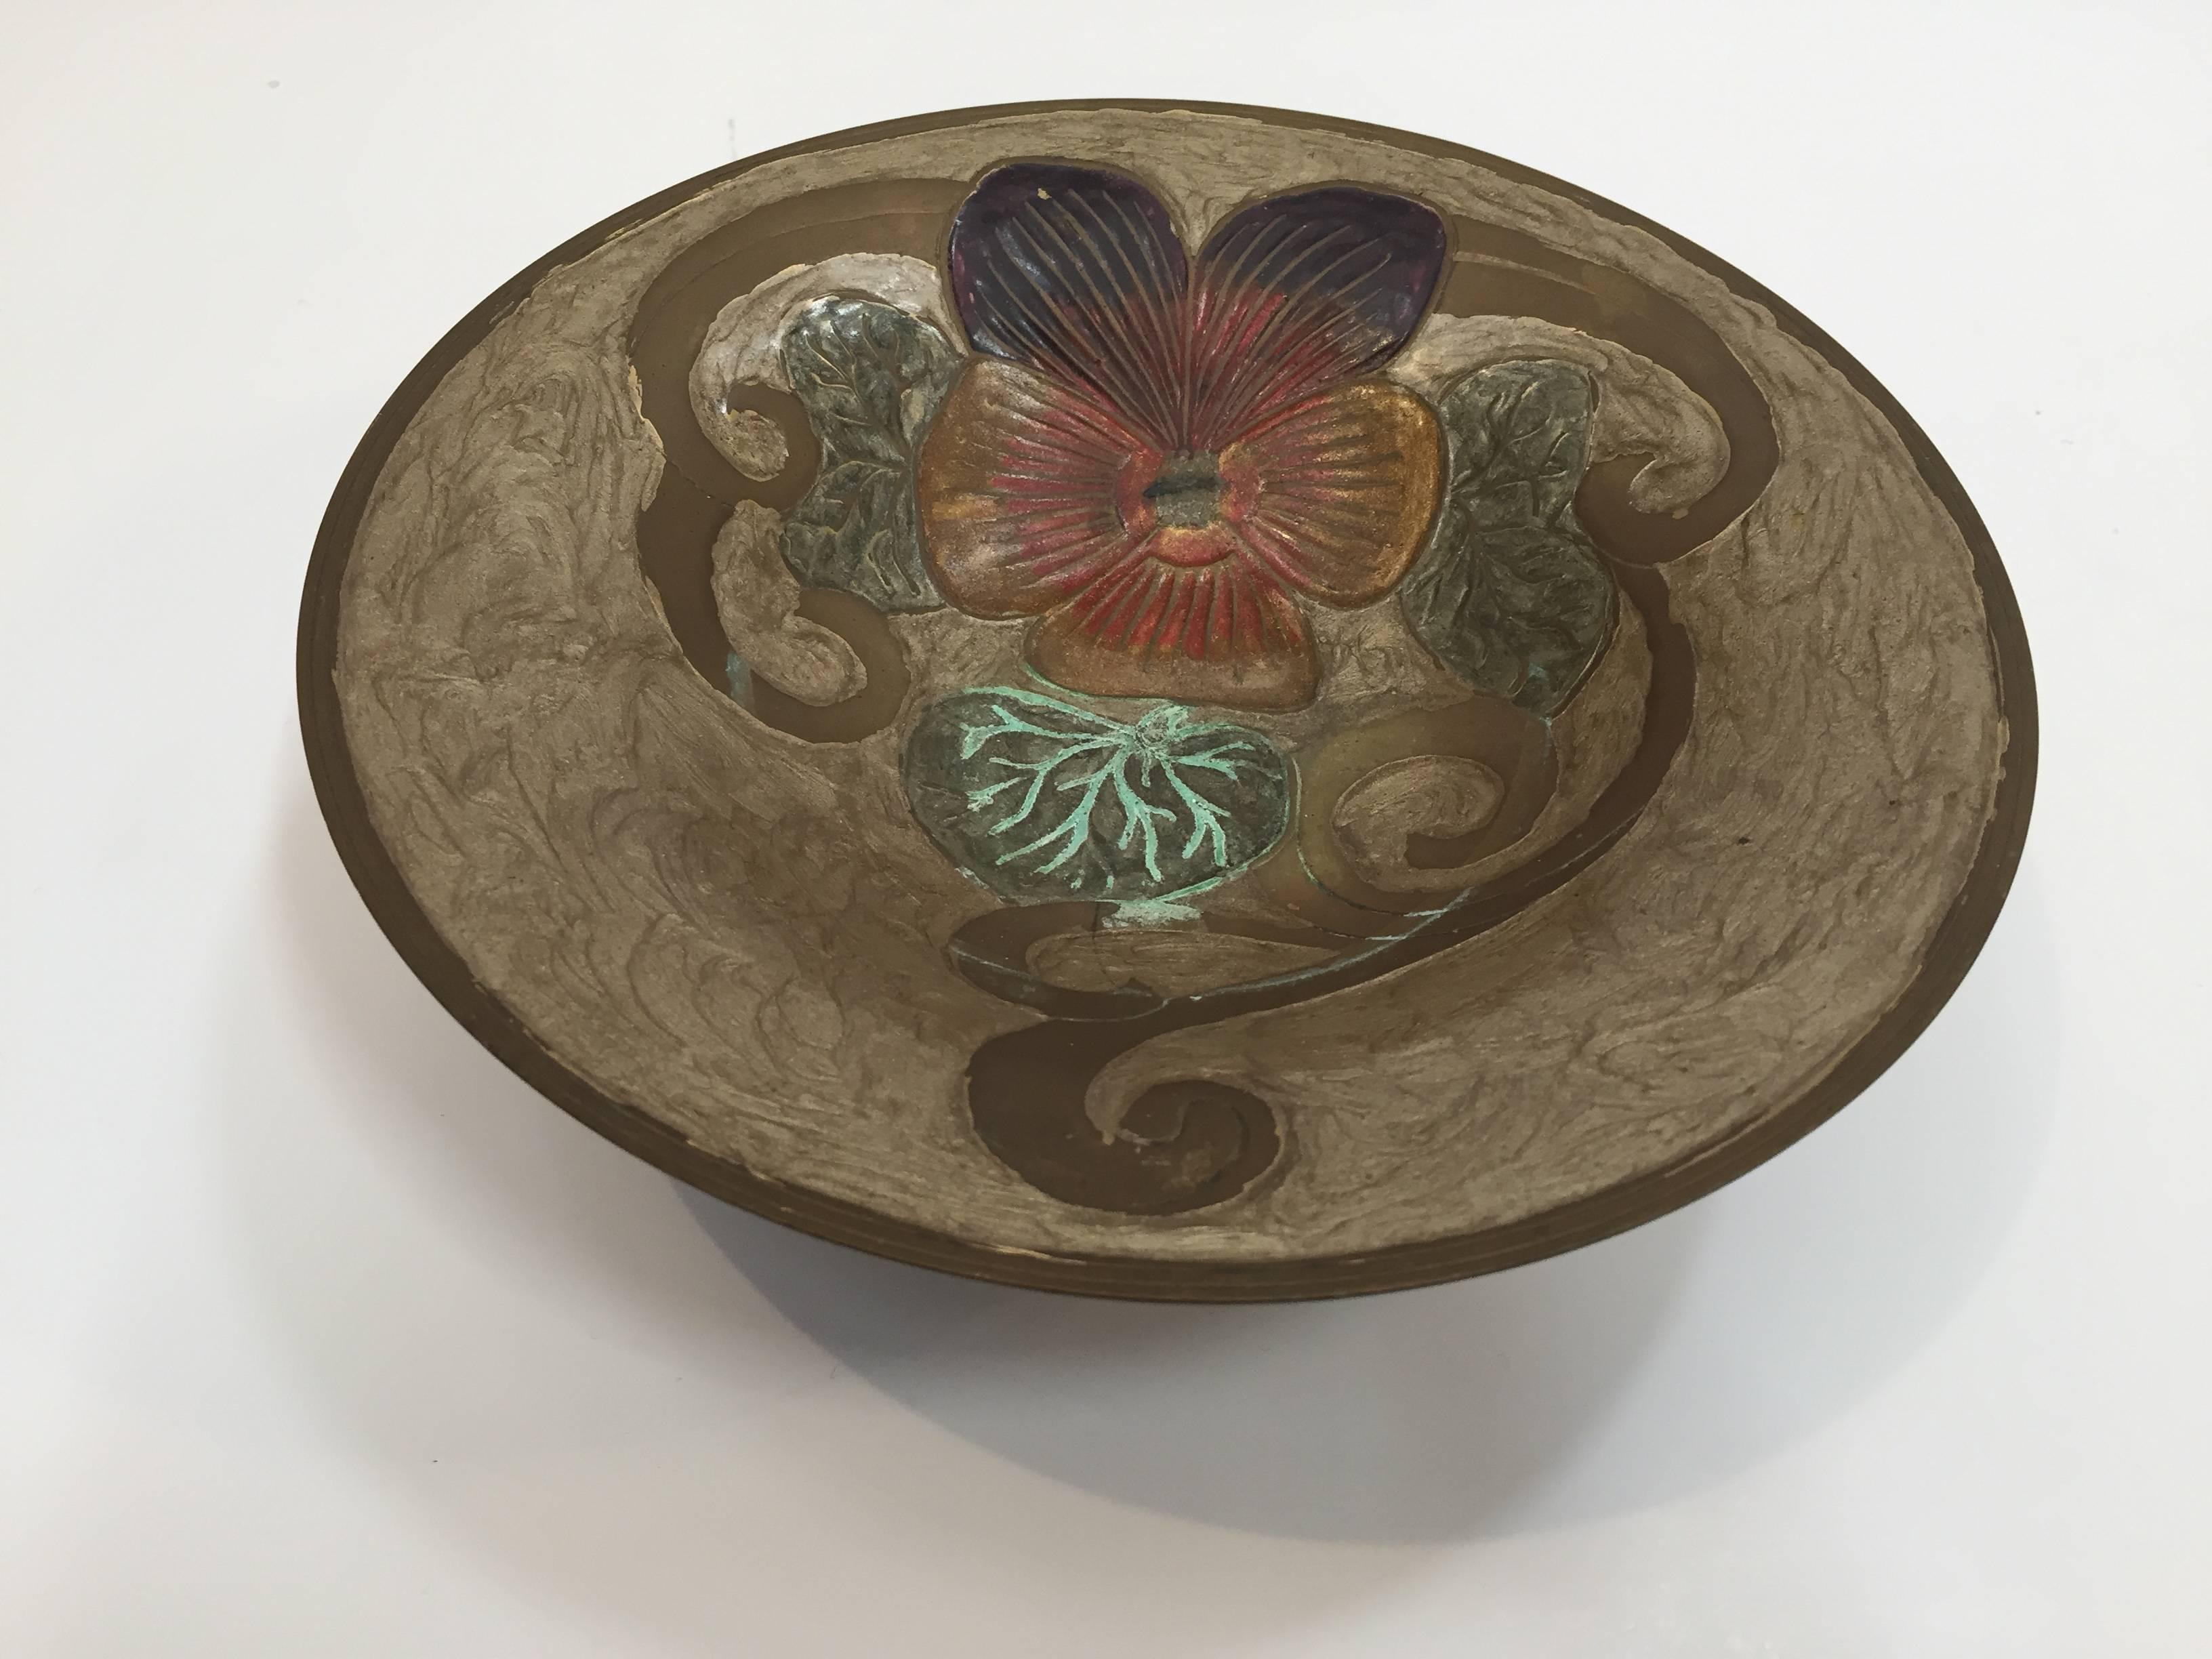 Art Nouveau A Delbaux Messing emailliert catchall, vide poche, change holder, footed bowl.
Handgemalte Blumen, ziselierte Motive, hergestellt in Frankreich,
etwa 1940er Jahre.
 